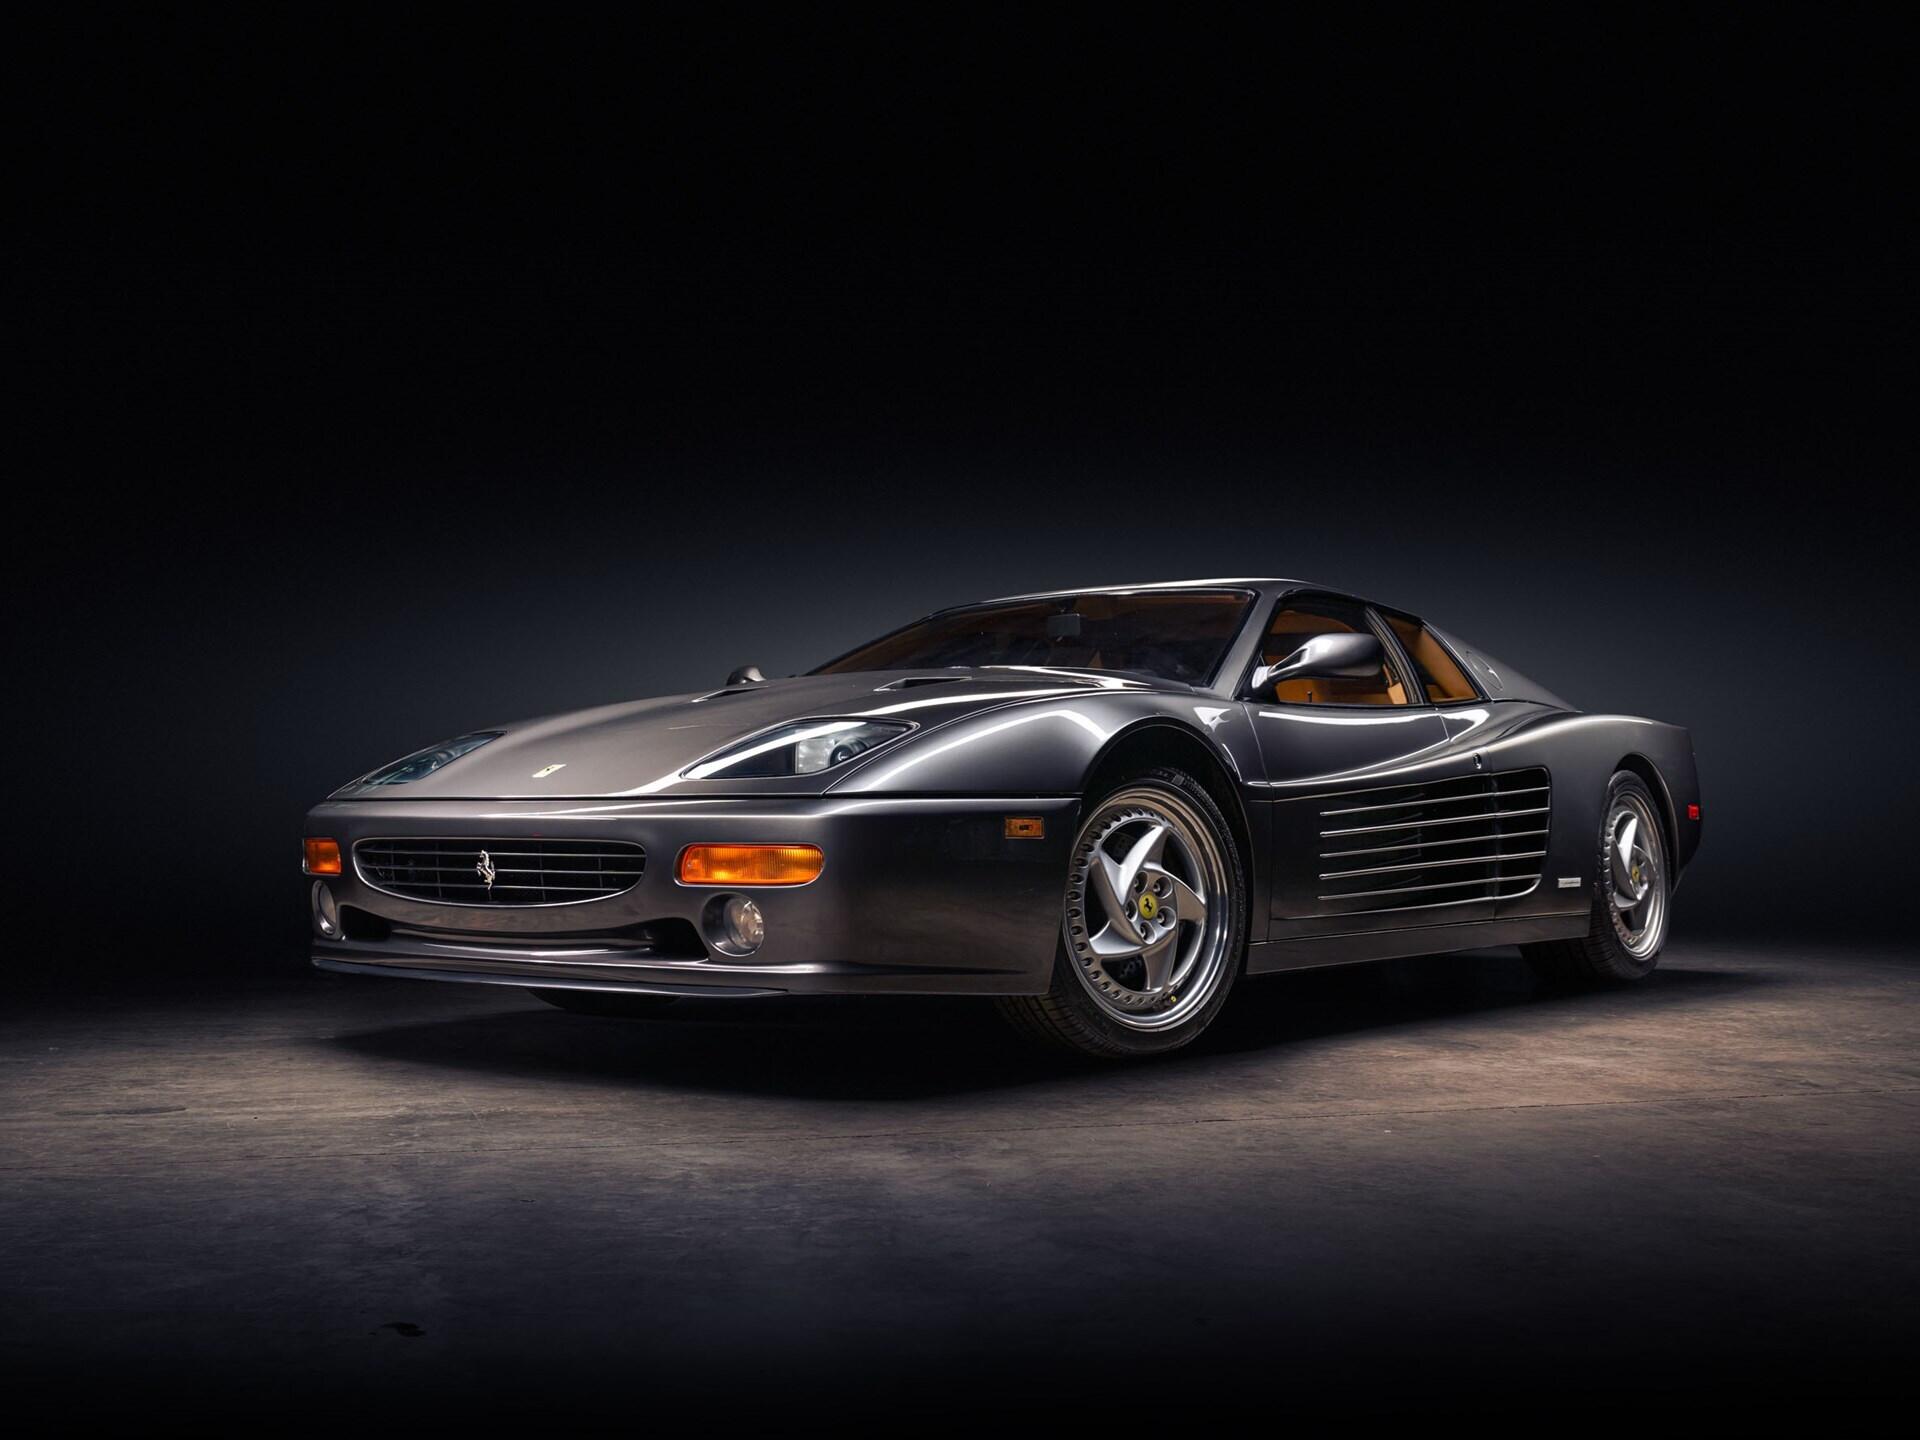 imagen 1 de Sale a subasta un espectacular Ferrari F512 M Coupe de 1995.